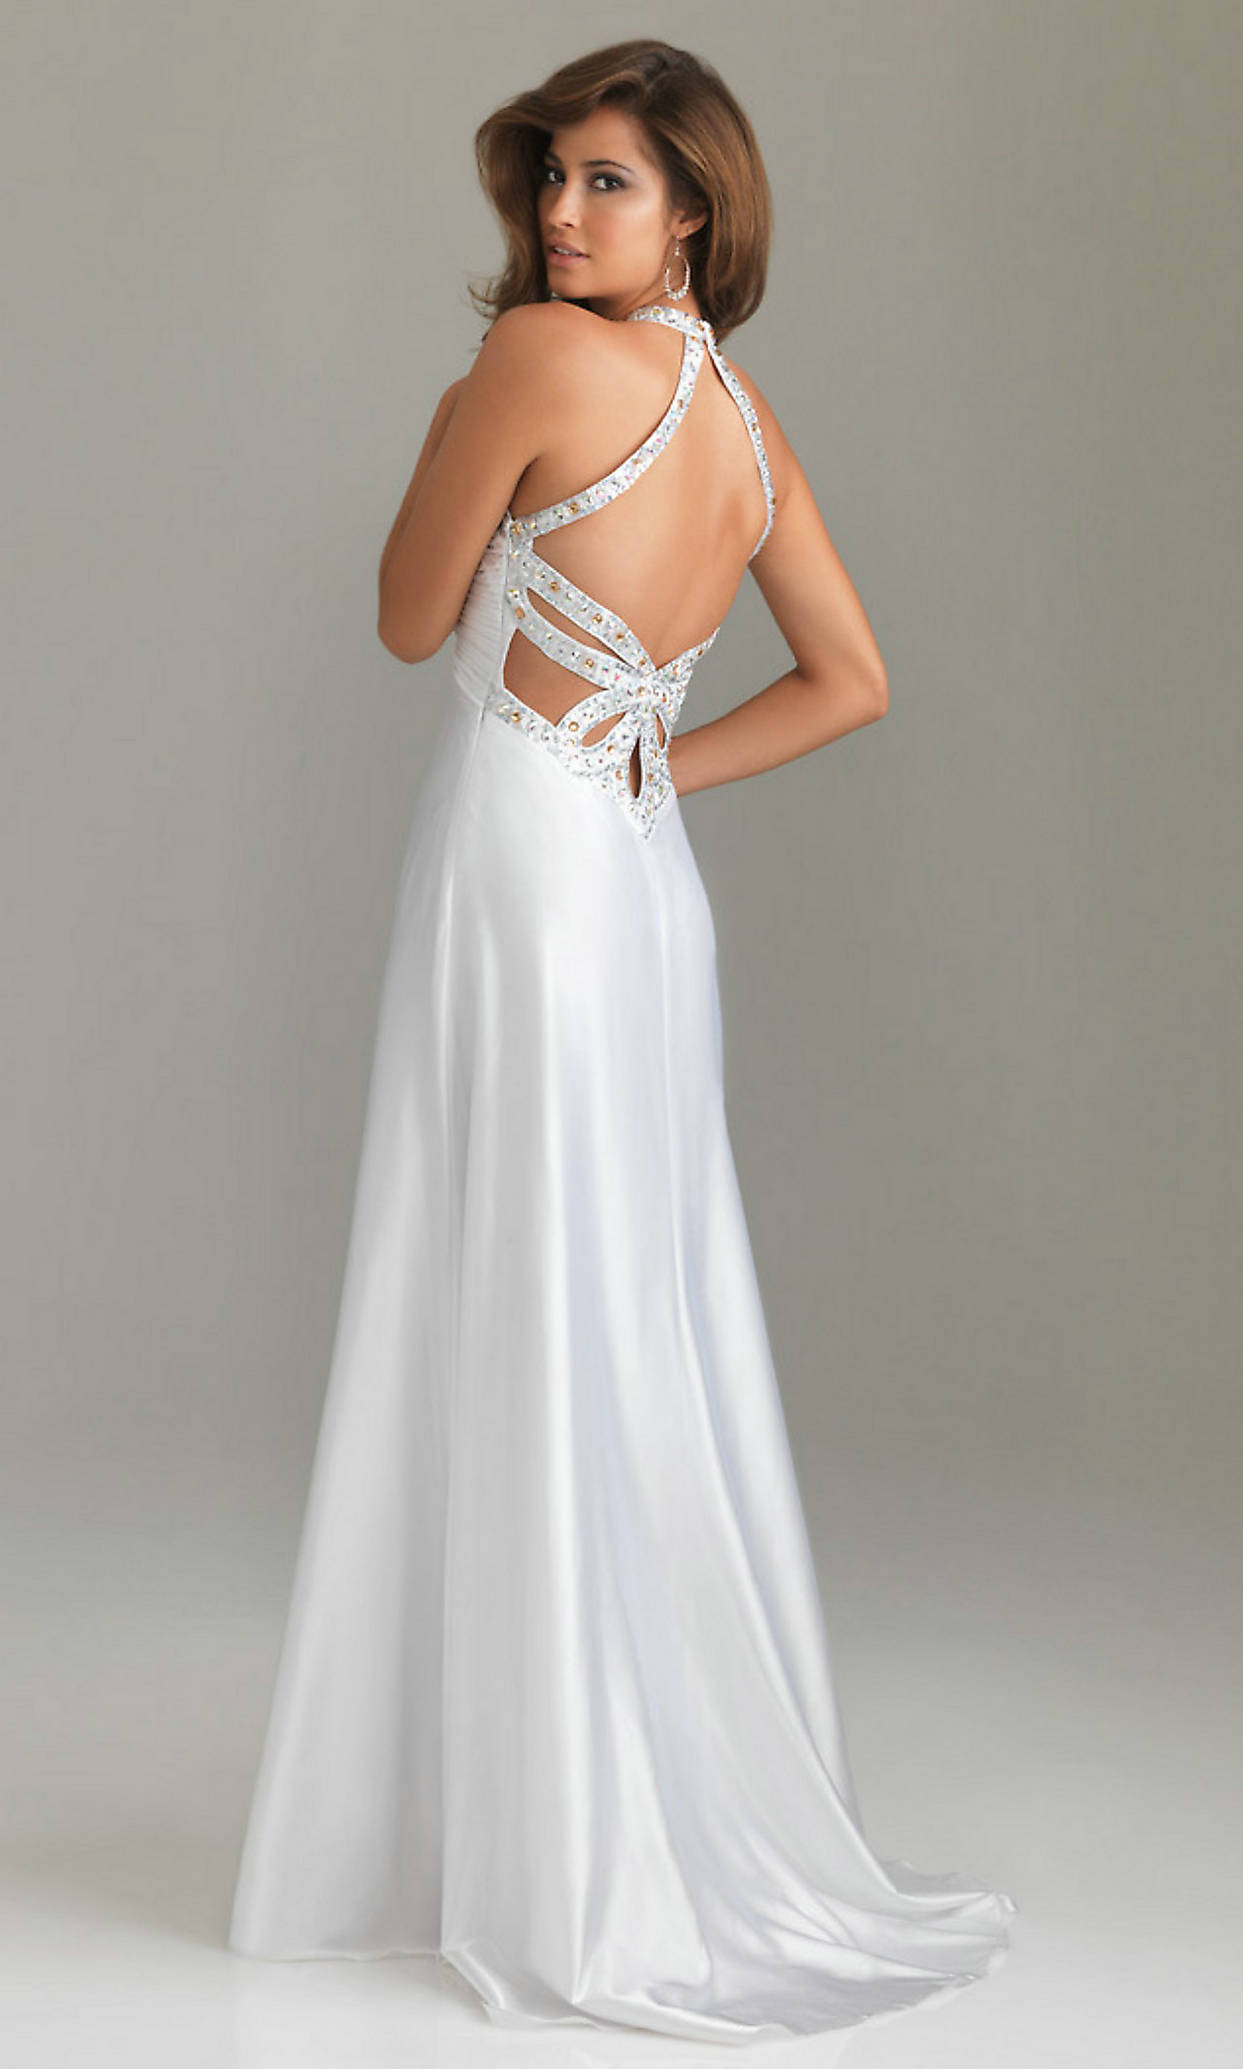 Elegant Long White Prom Dresses